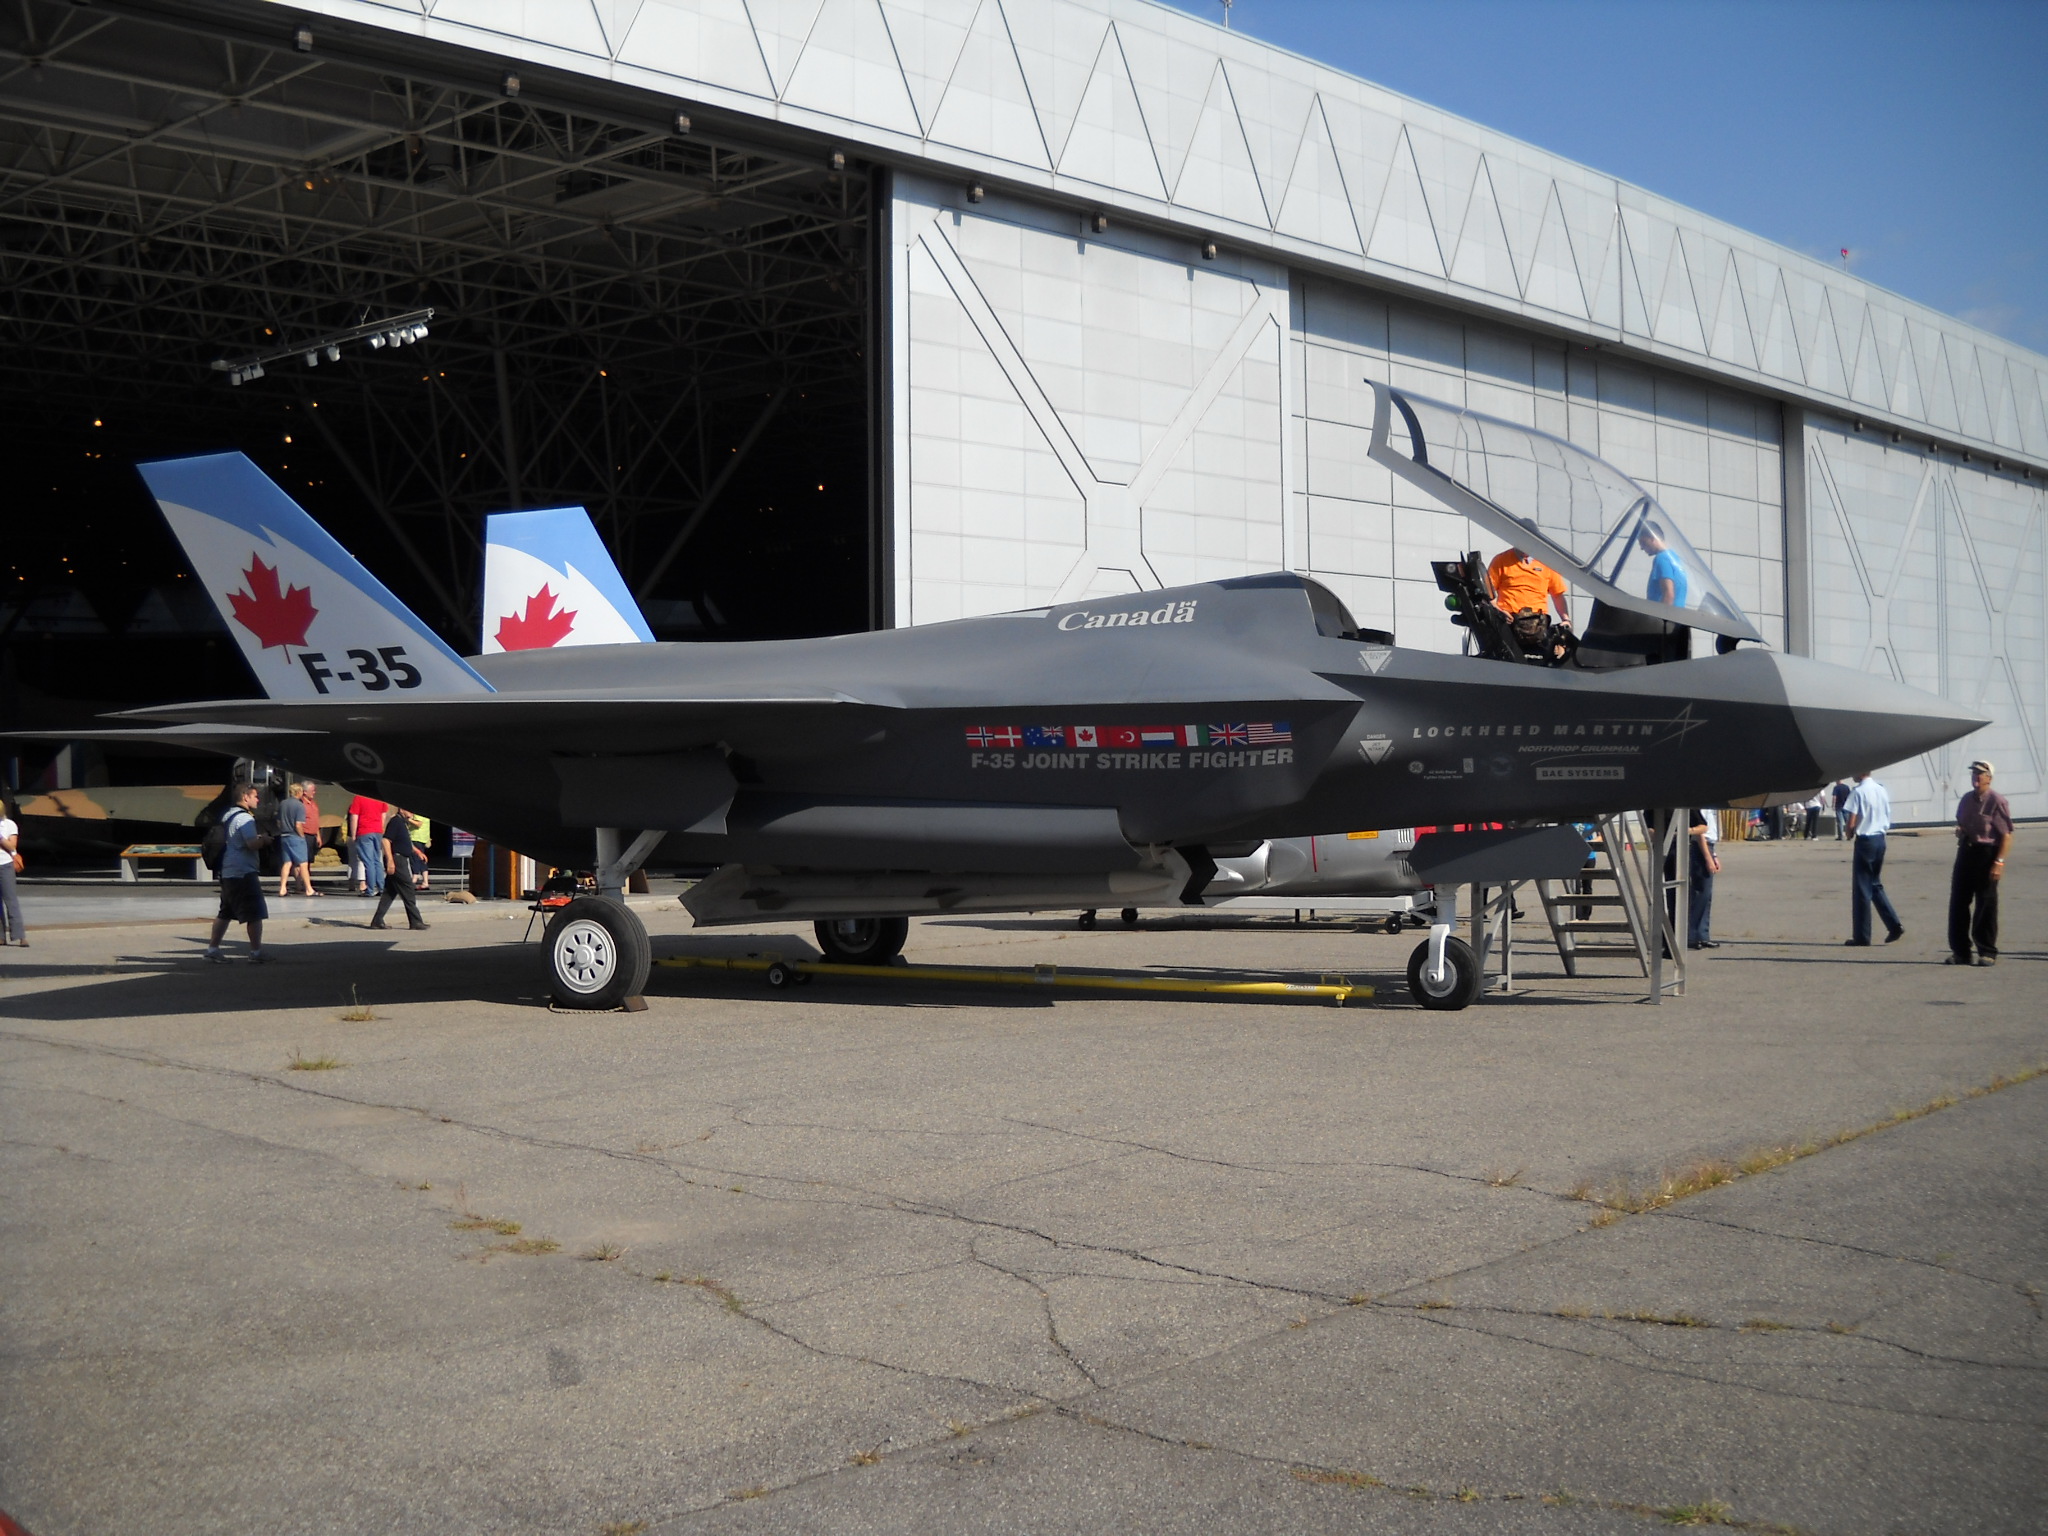 Le F-35 au Canada : Nouveau coup de froid. Les concurrents font aussi bien!